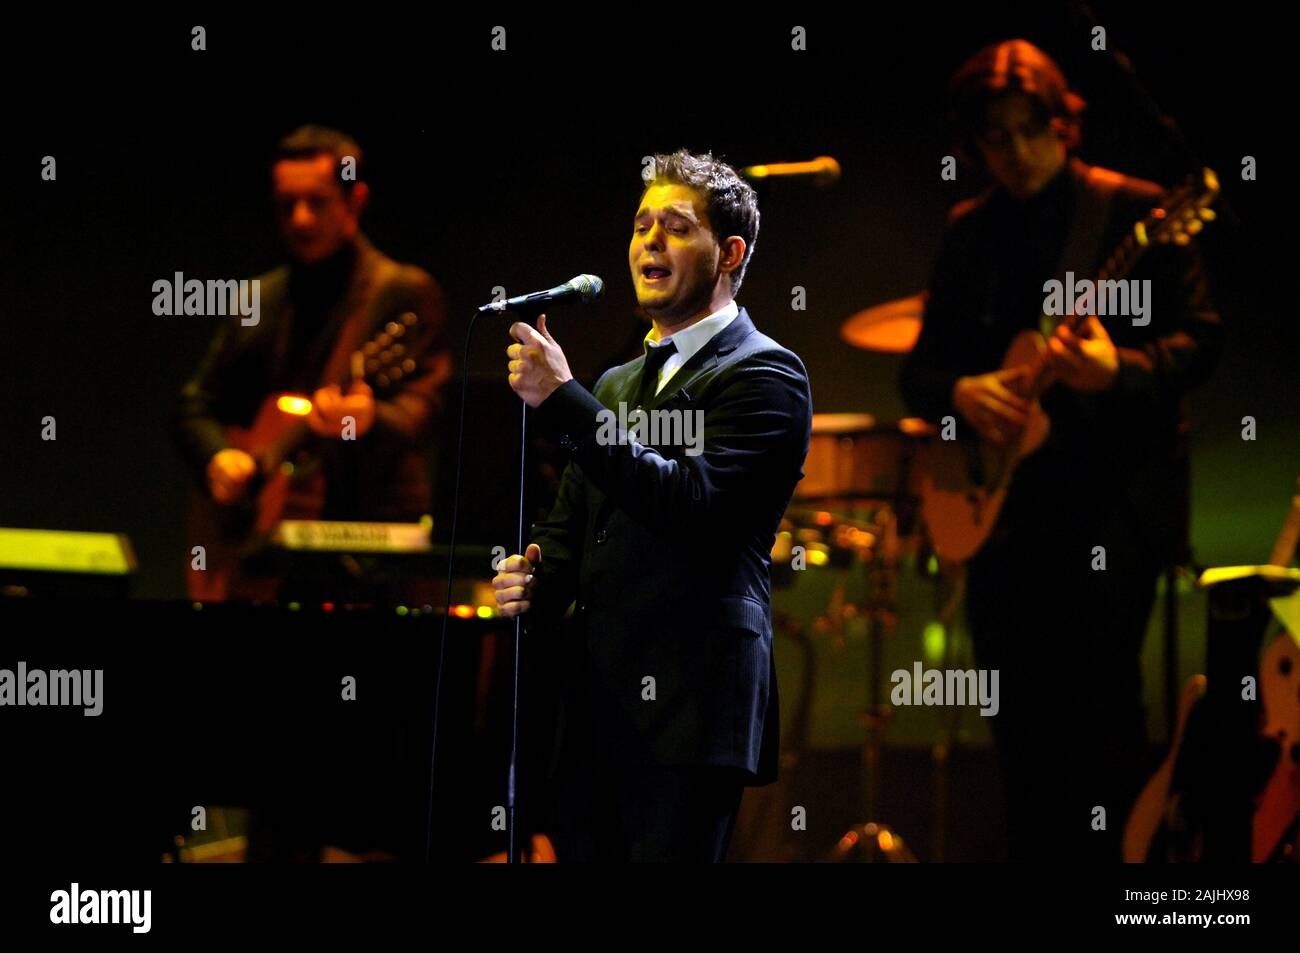 Milan Italie, 26 octobre 2007, concert live de Michael Bublé au DatchForum de Assago : le chanteur Michael Bublé pendant le concert Banque D'Images